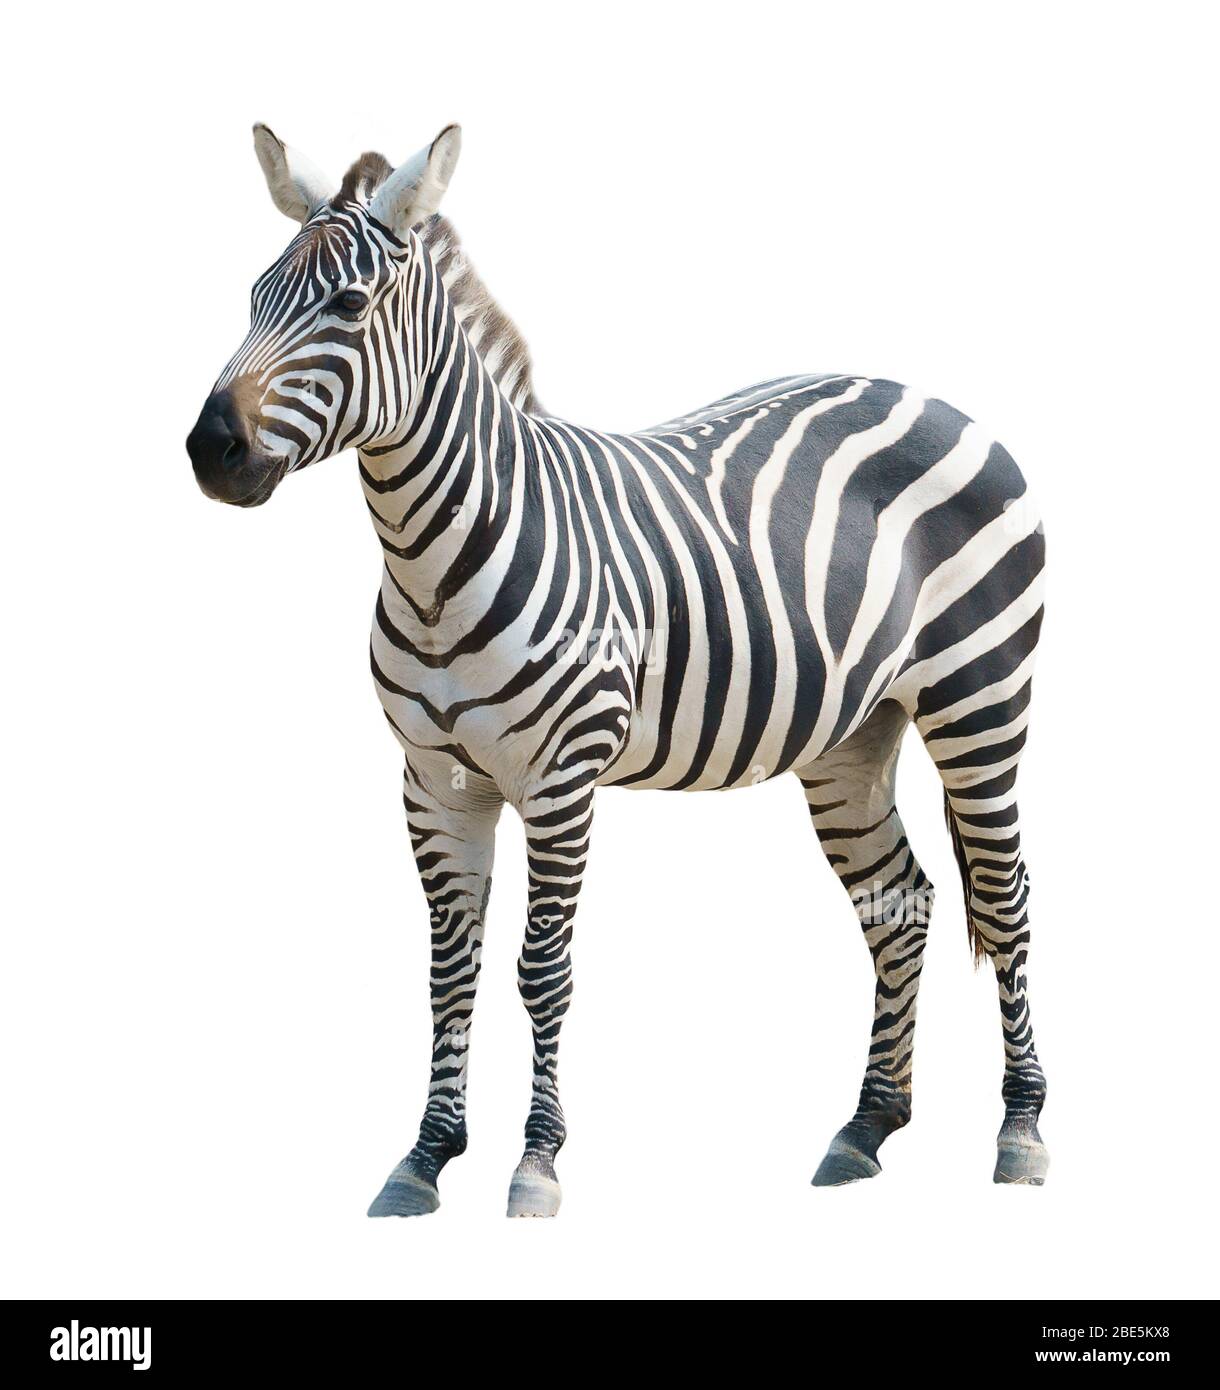 zebra isolated on white background Stock Photo